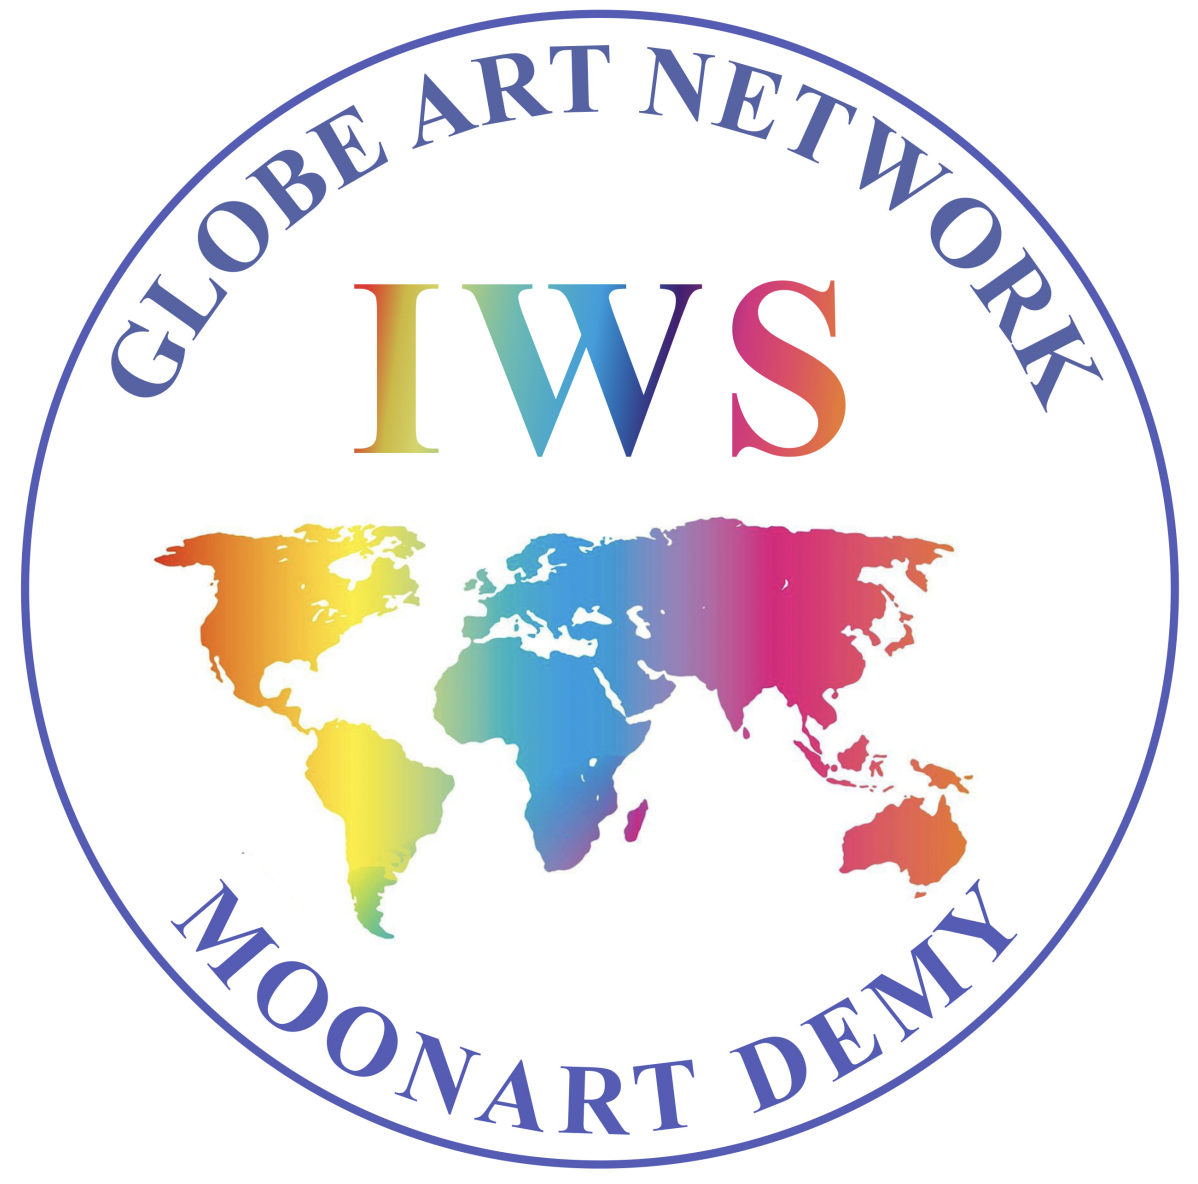 IWS-Moonart-Demy